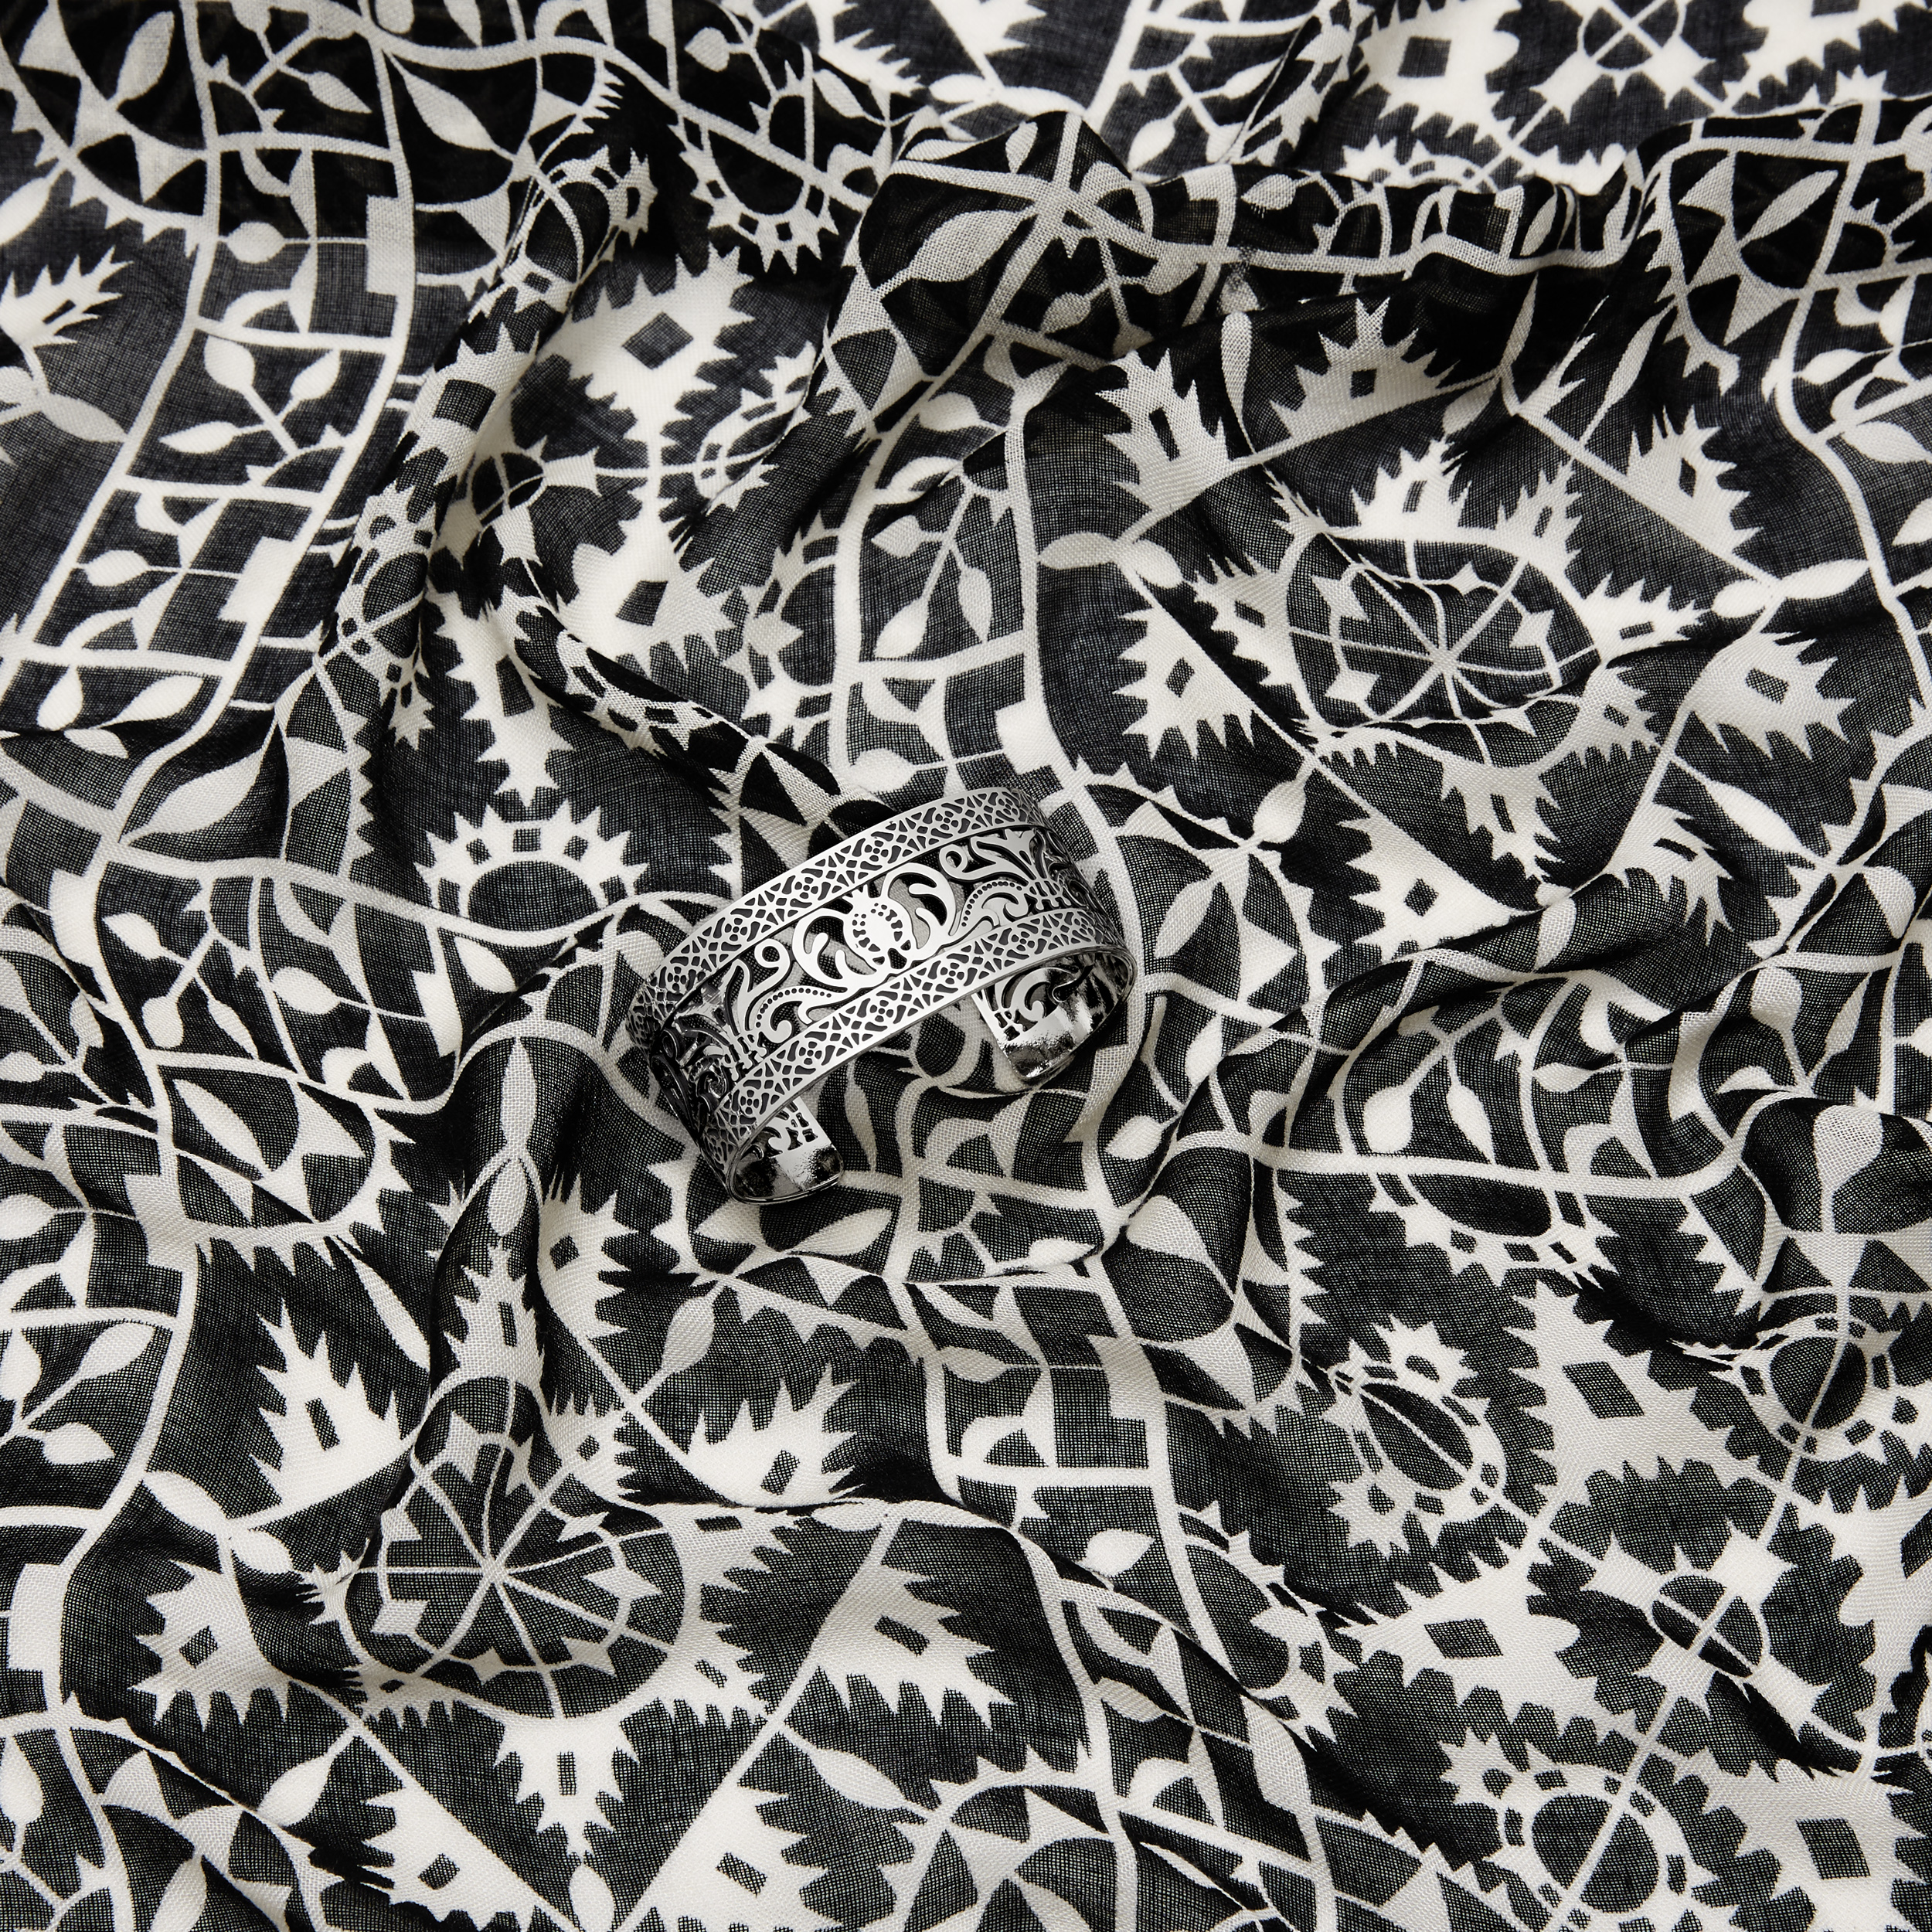 intricately patterned silver bangle bracelet on intricately patterned black and white scarf